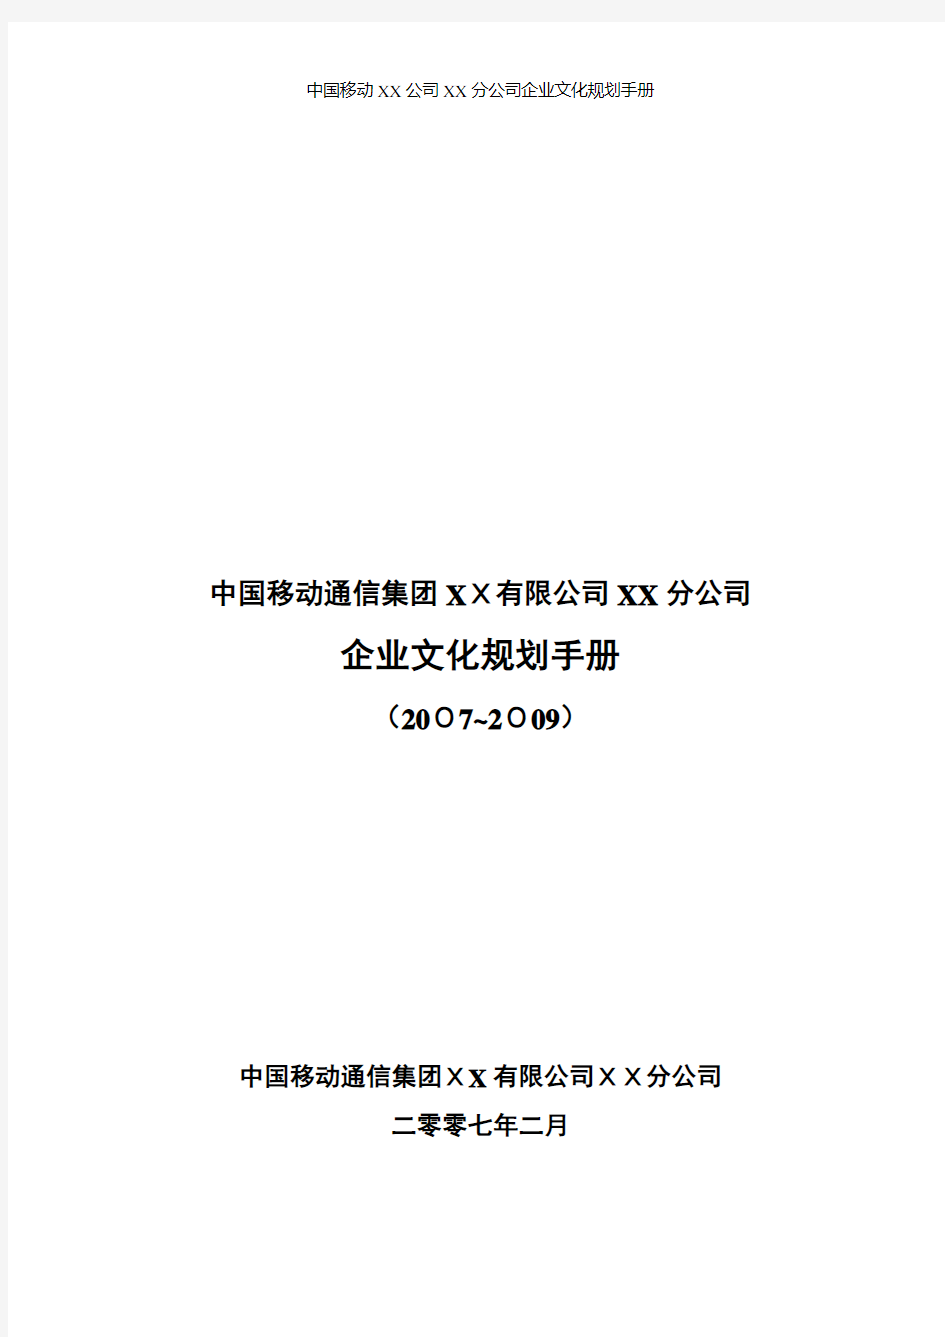 中国移动XX公司XX分公司企业文化规划手册